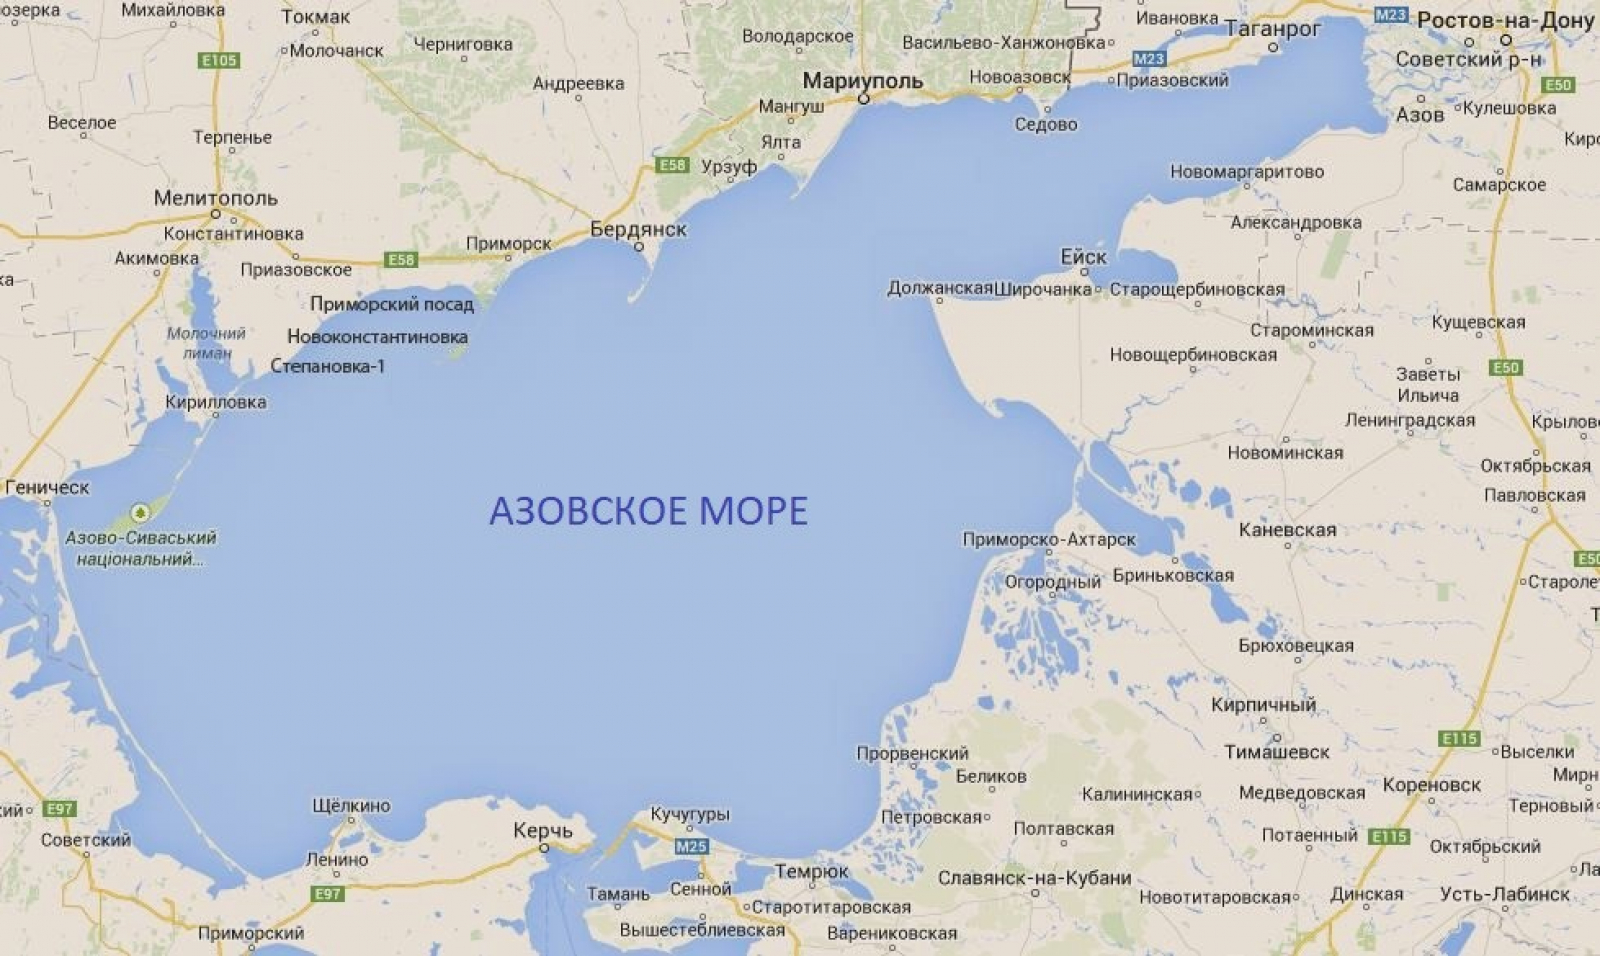 Карта побережье Азовского моря подробная с поселками